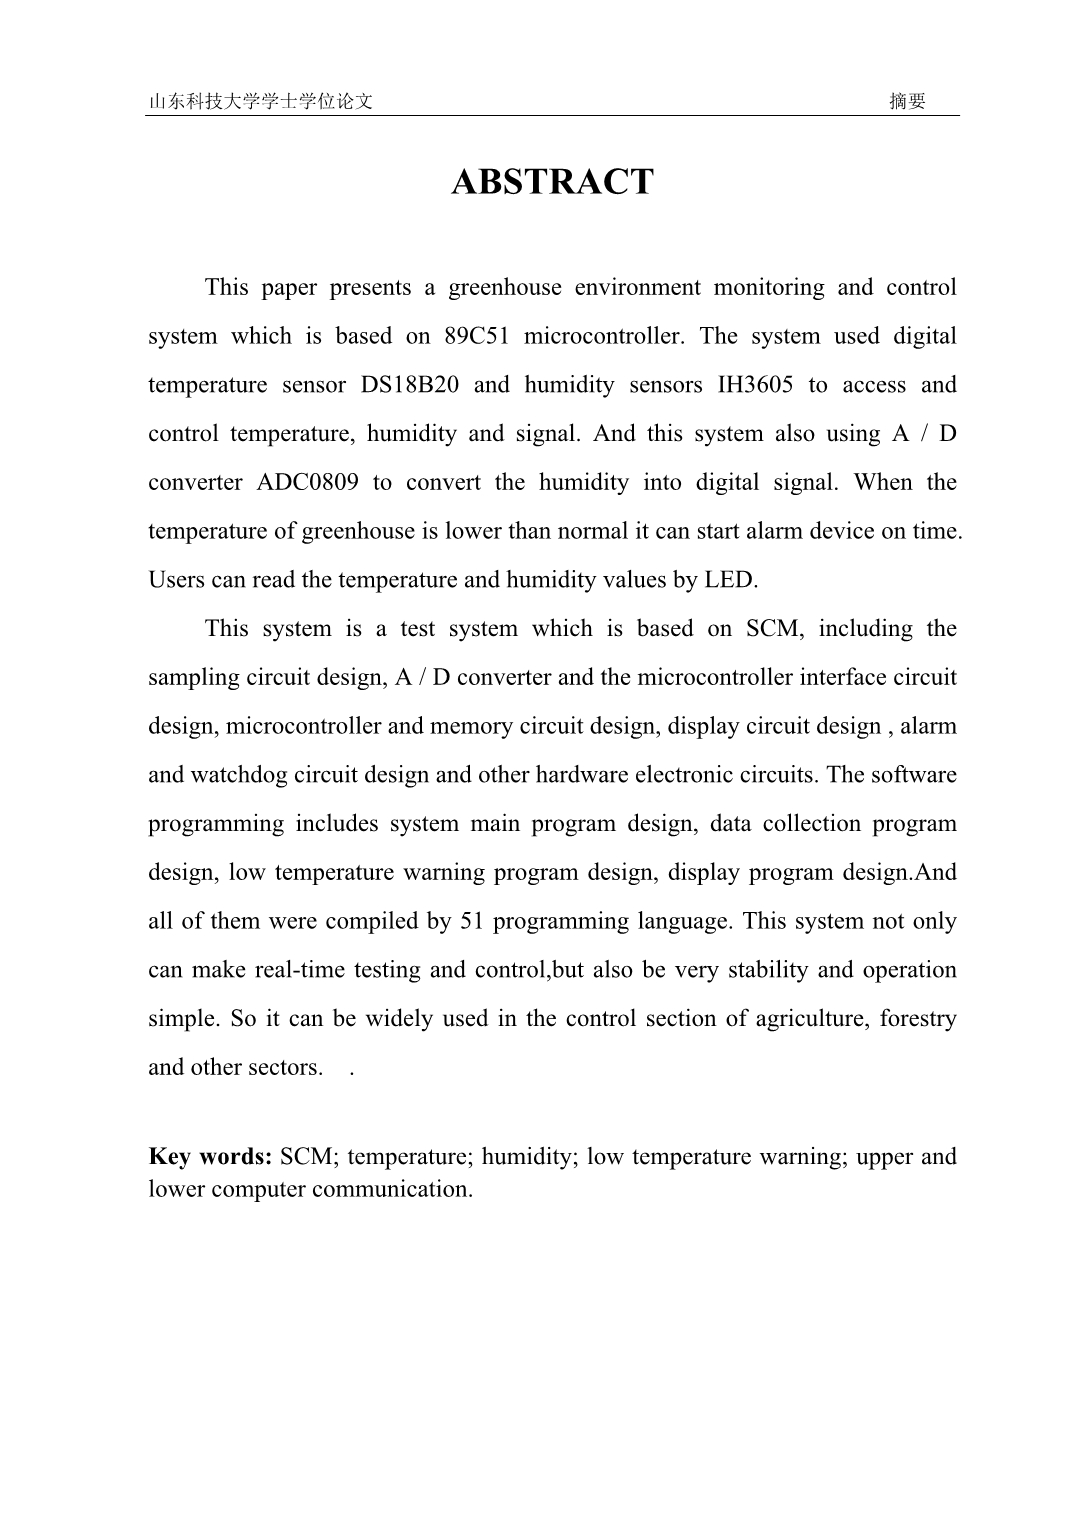 《基于89C51单片机控制技术的日光温室实时环境监测与控制系统》-公开DOC·毕业论文_第2页